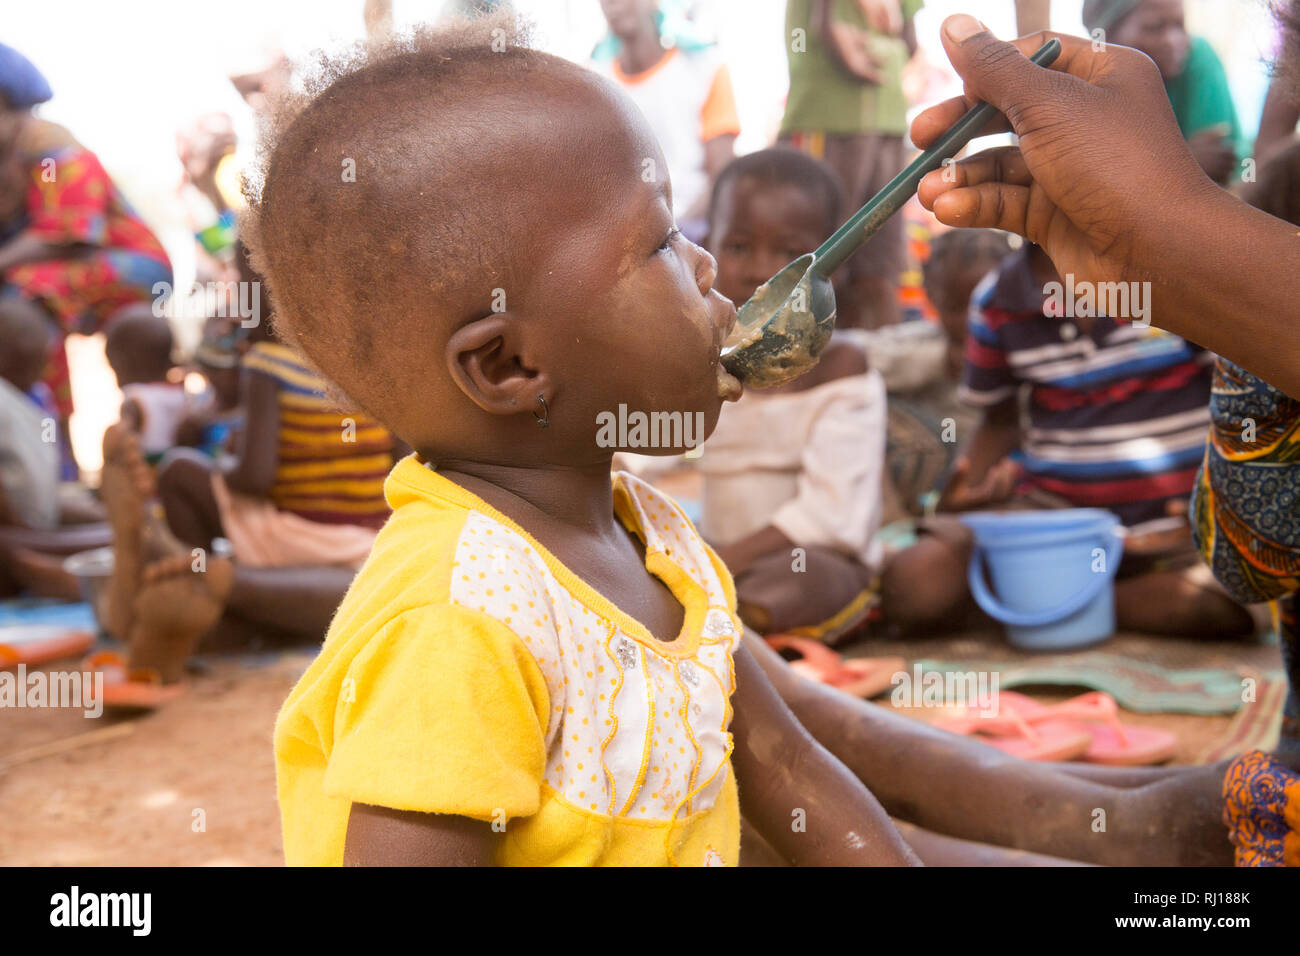 Samba Dorf, yako Provinz, Burkina Faso. Unterernährte Kinder essen nahrhaften Brei nach Gesundheit Arbeiter eine Demonstration der Methode. Stockfoto